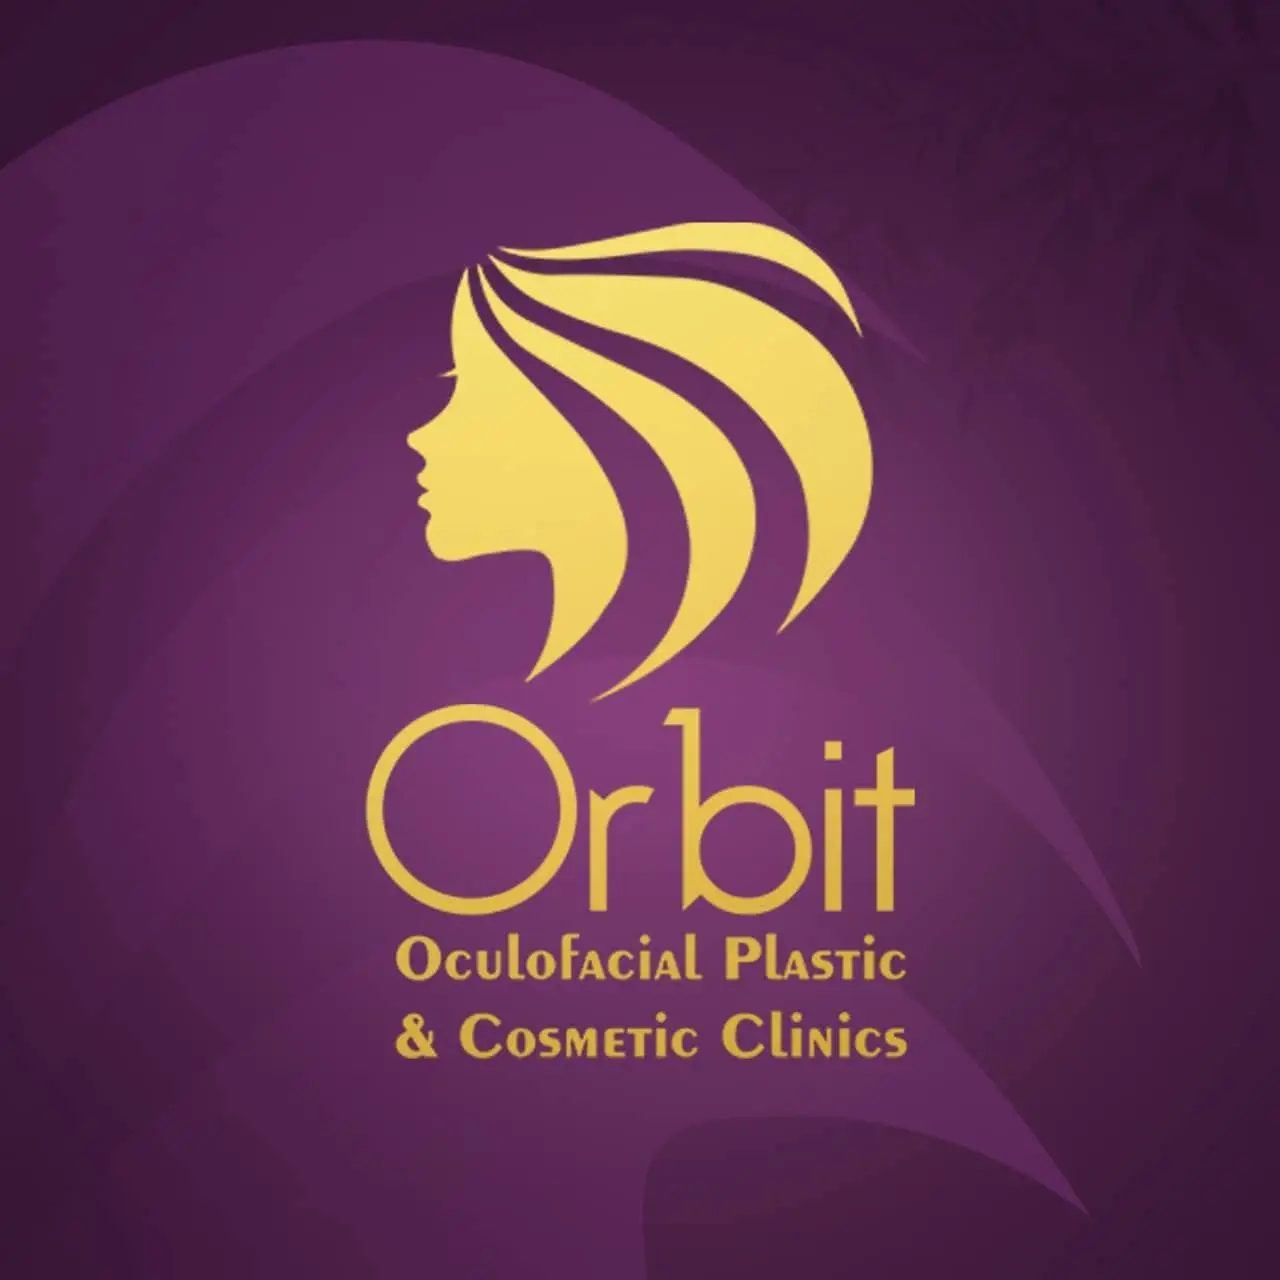 Beauty Clinics marketing: Orbit one of best beauty clinics in Egypt